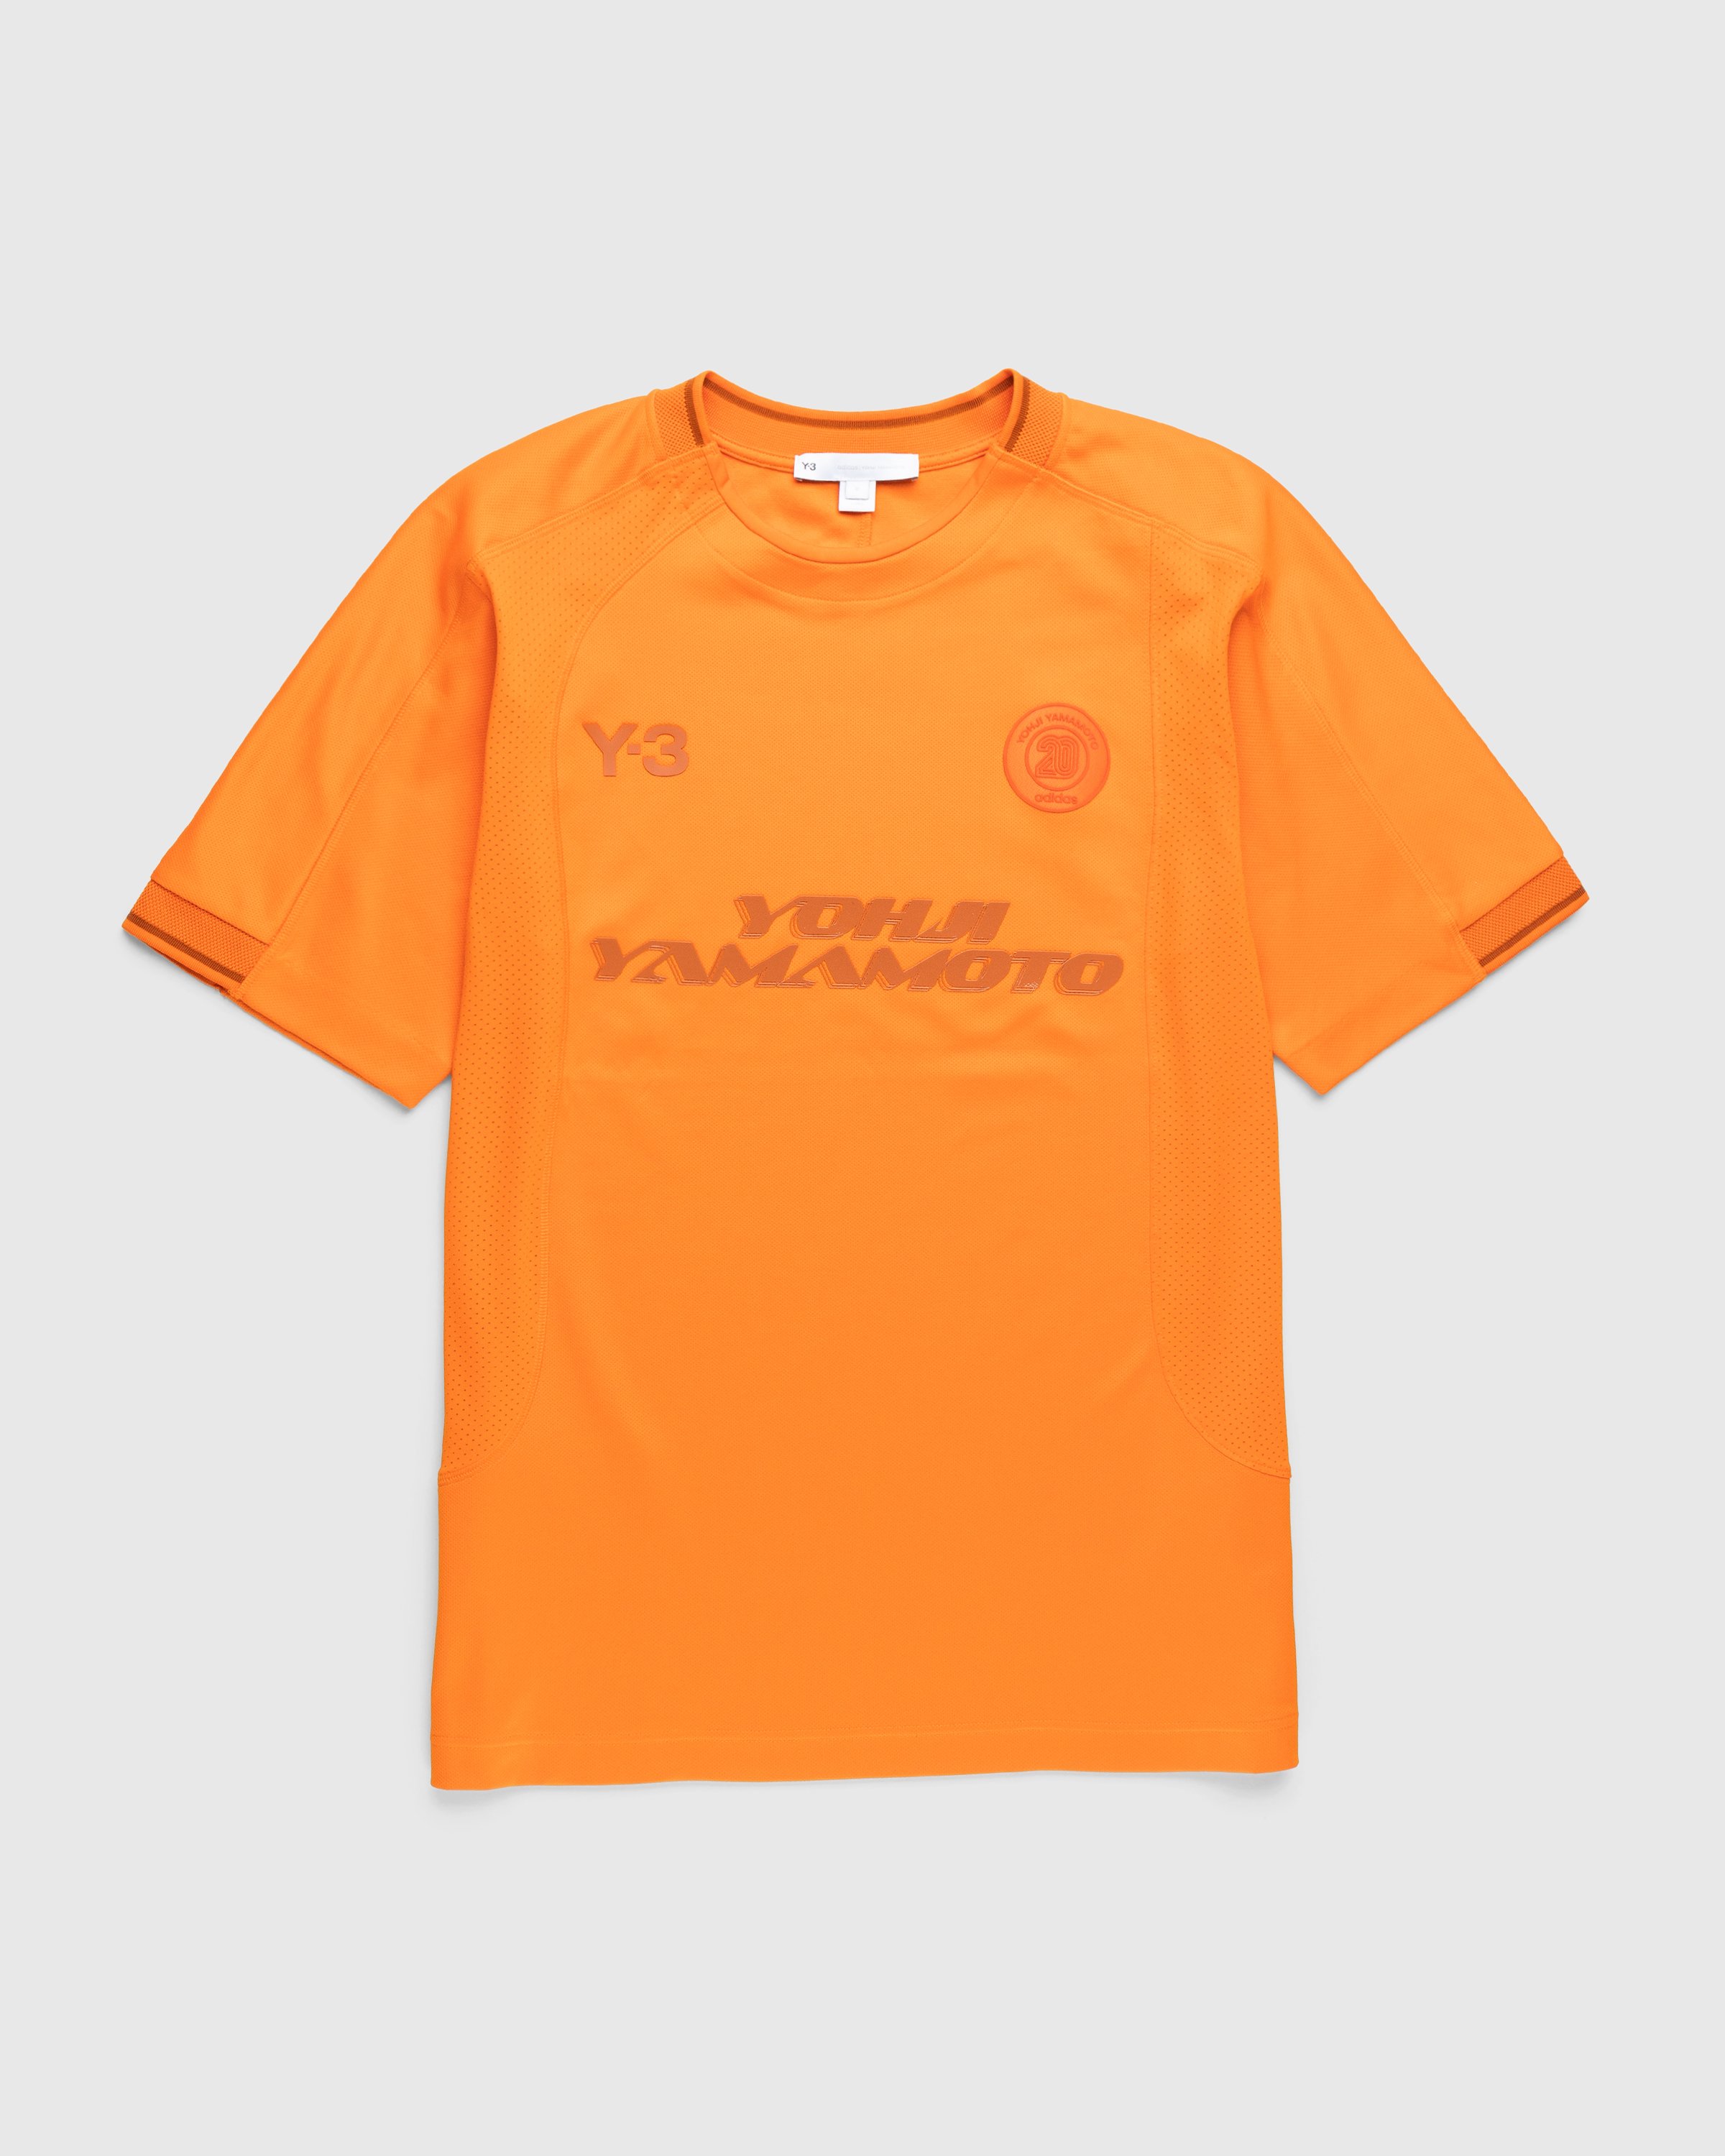 Y-3 - Logo T-Shirt - Clothing - Orange - Image 1